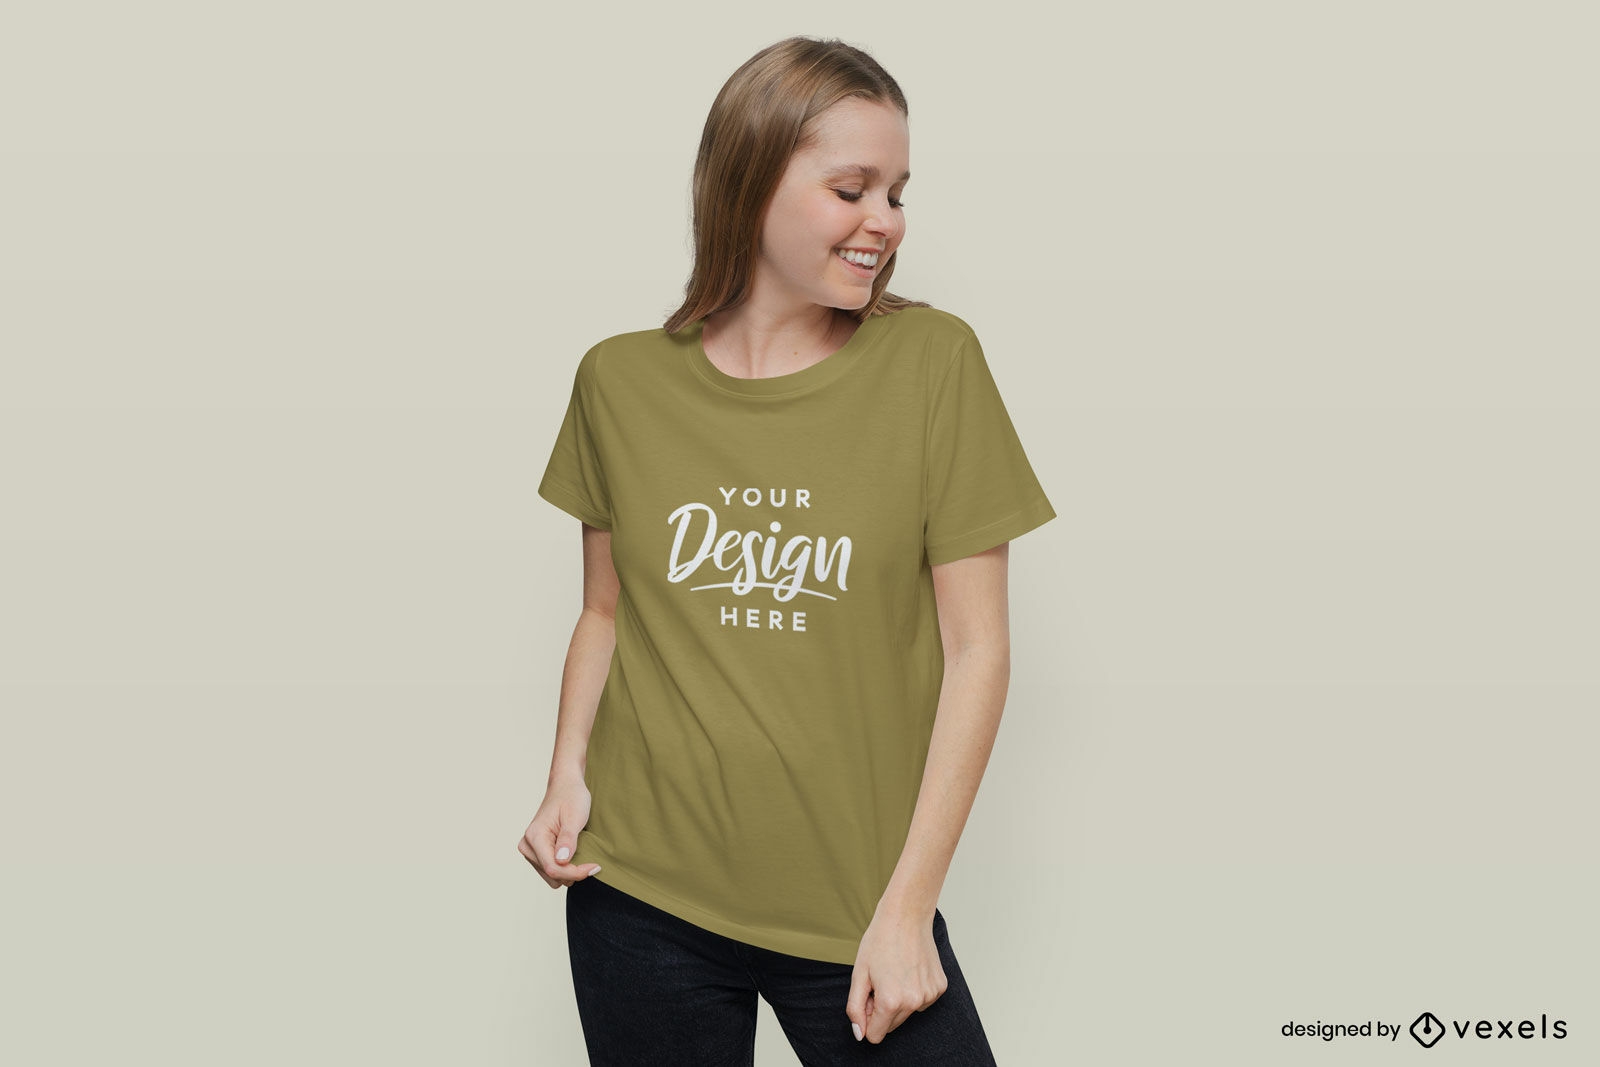 Frau, die in T-Shirt-Modell mit festem Hintergrund lächelt